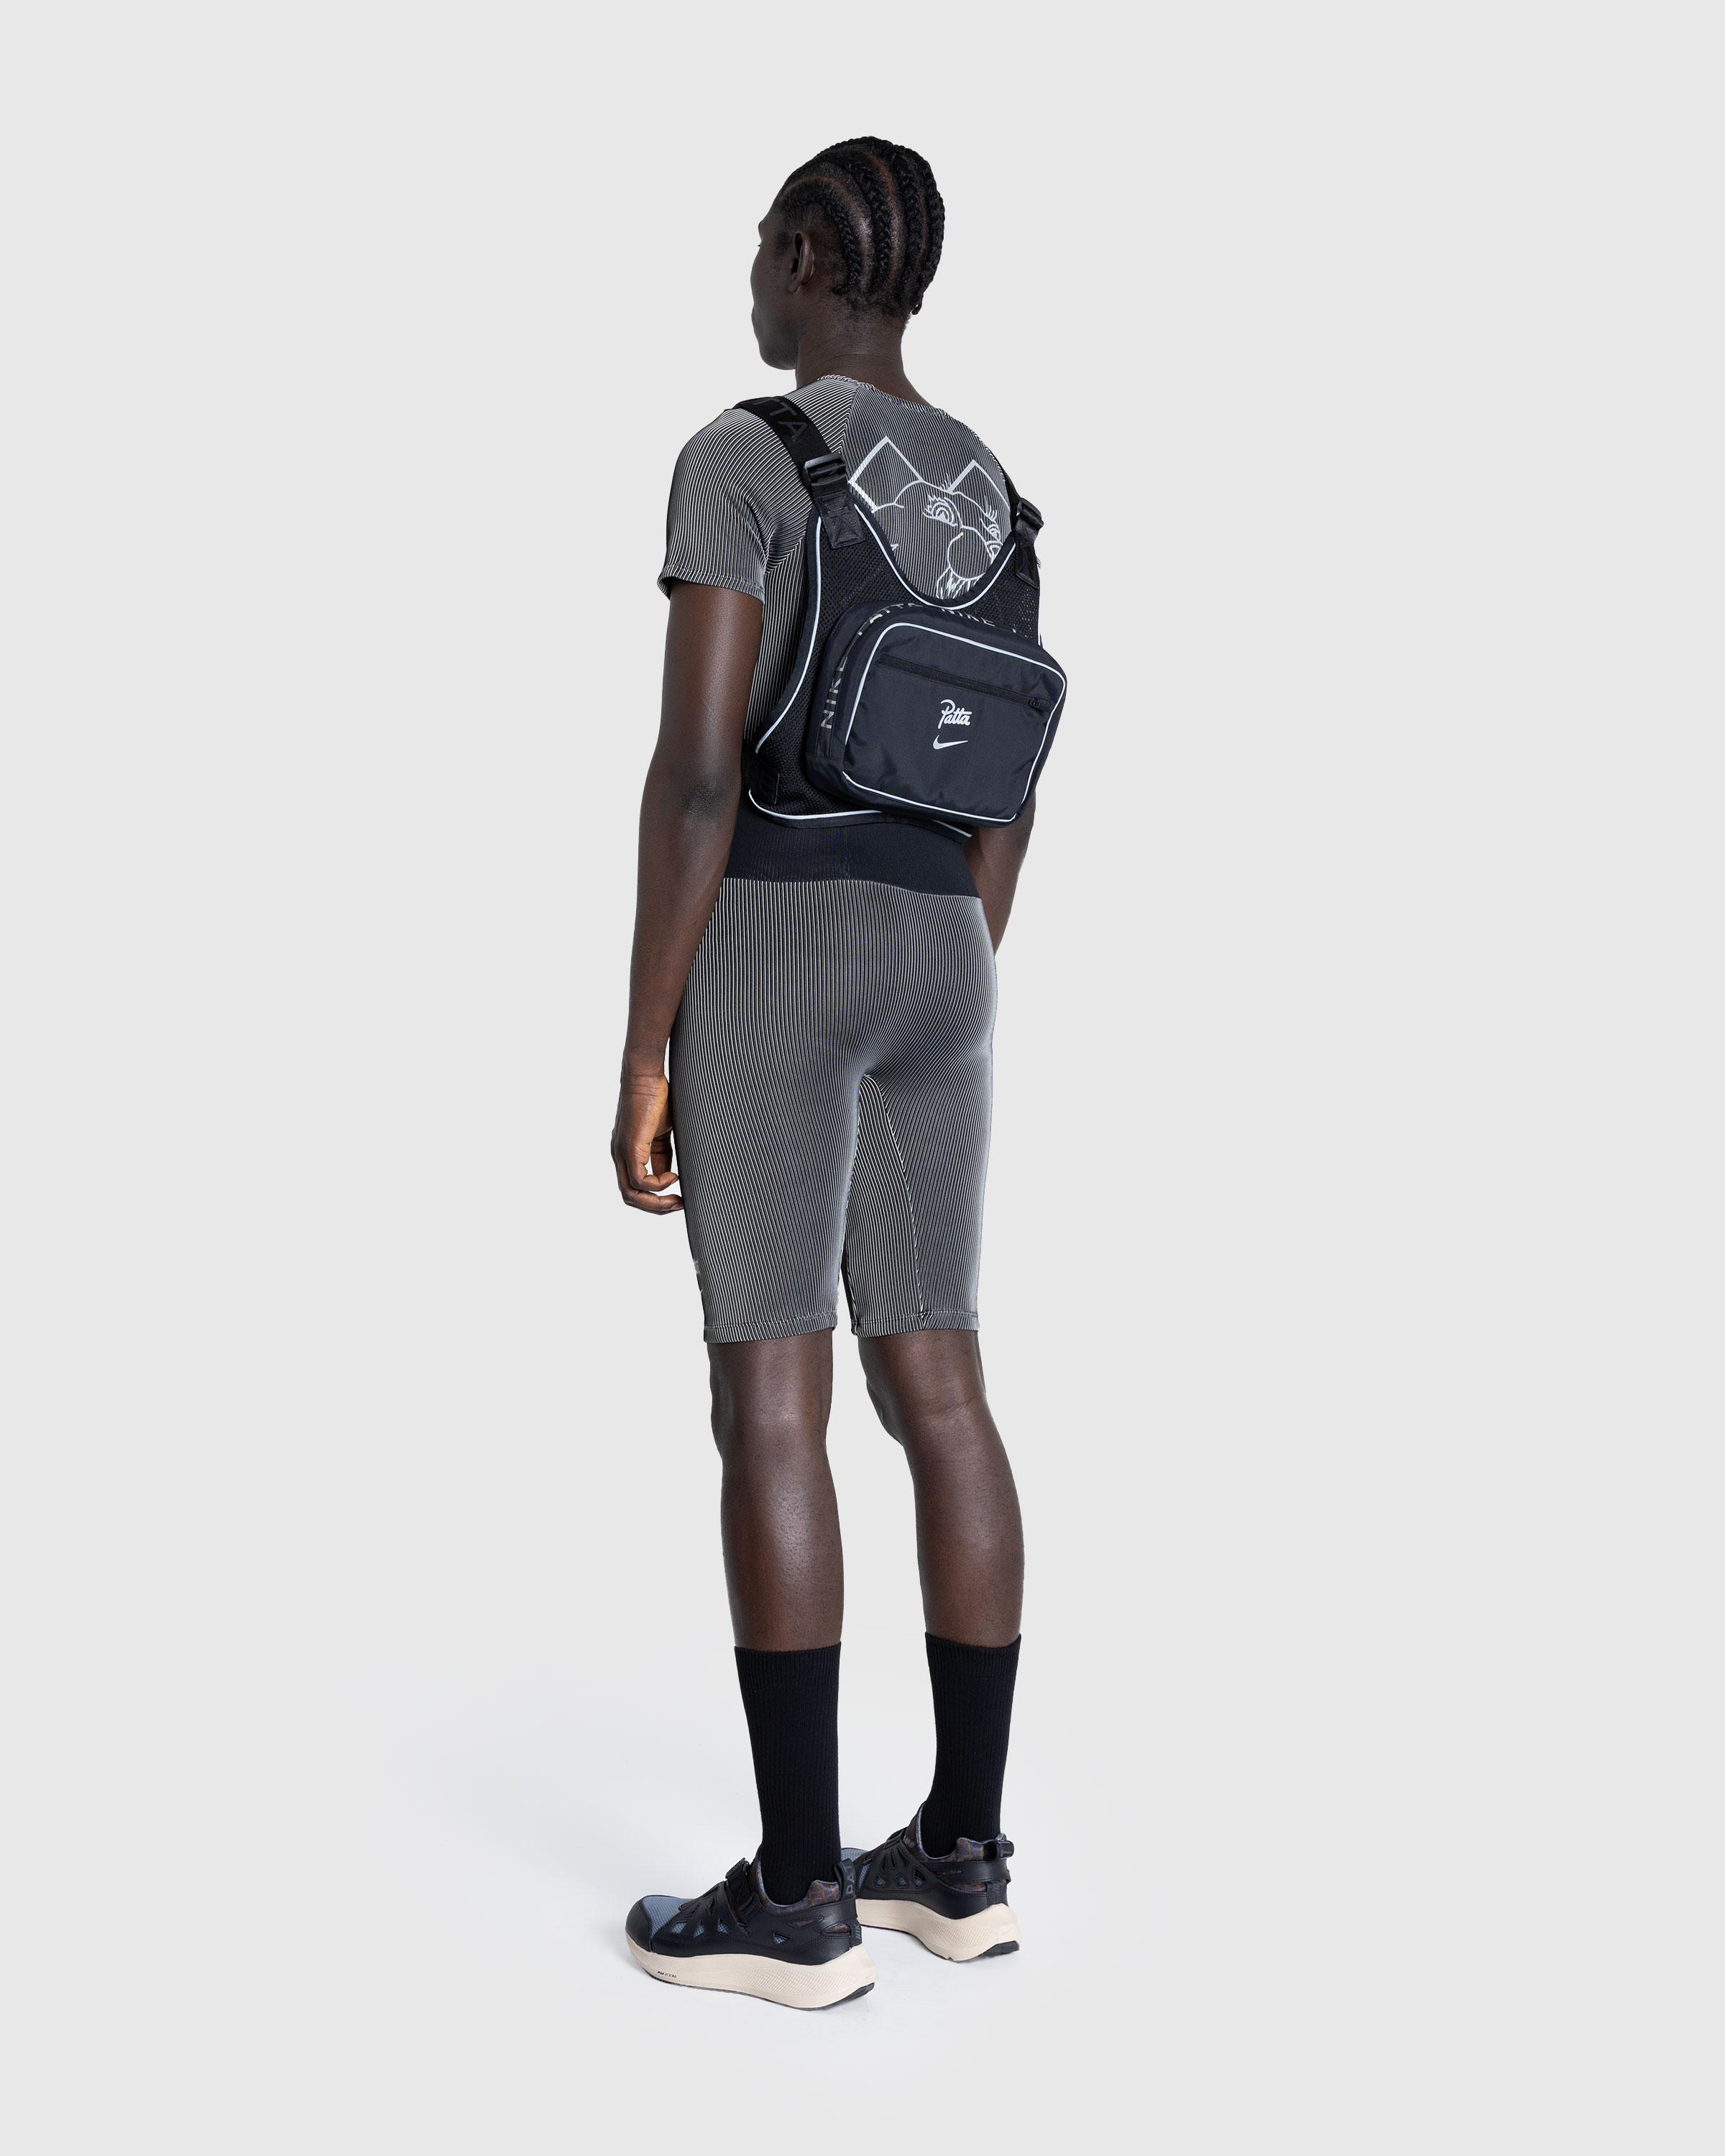 Nike x Patta – Rig Vest Black - Shoulder Bags - Black - Image 4